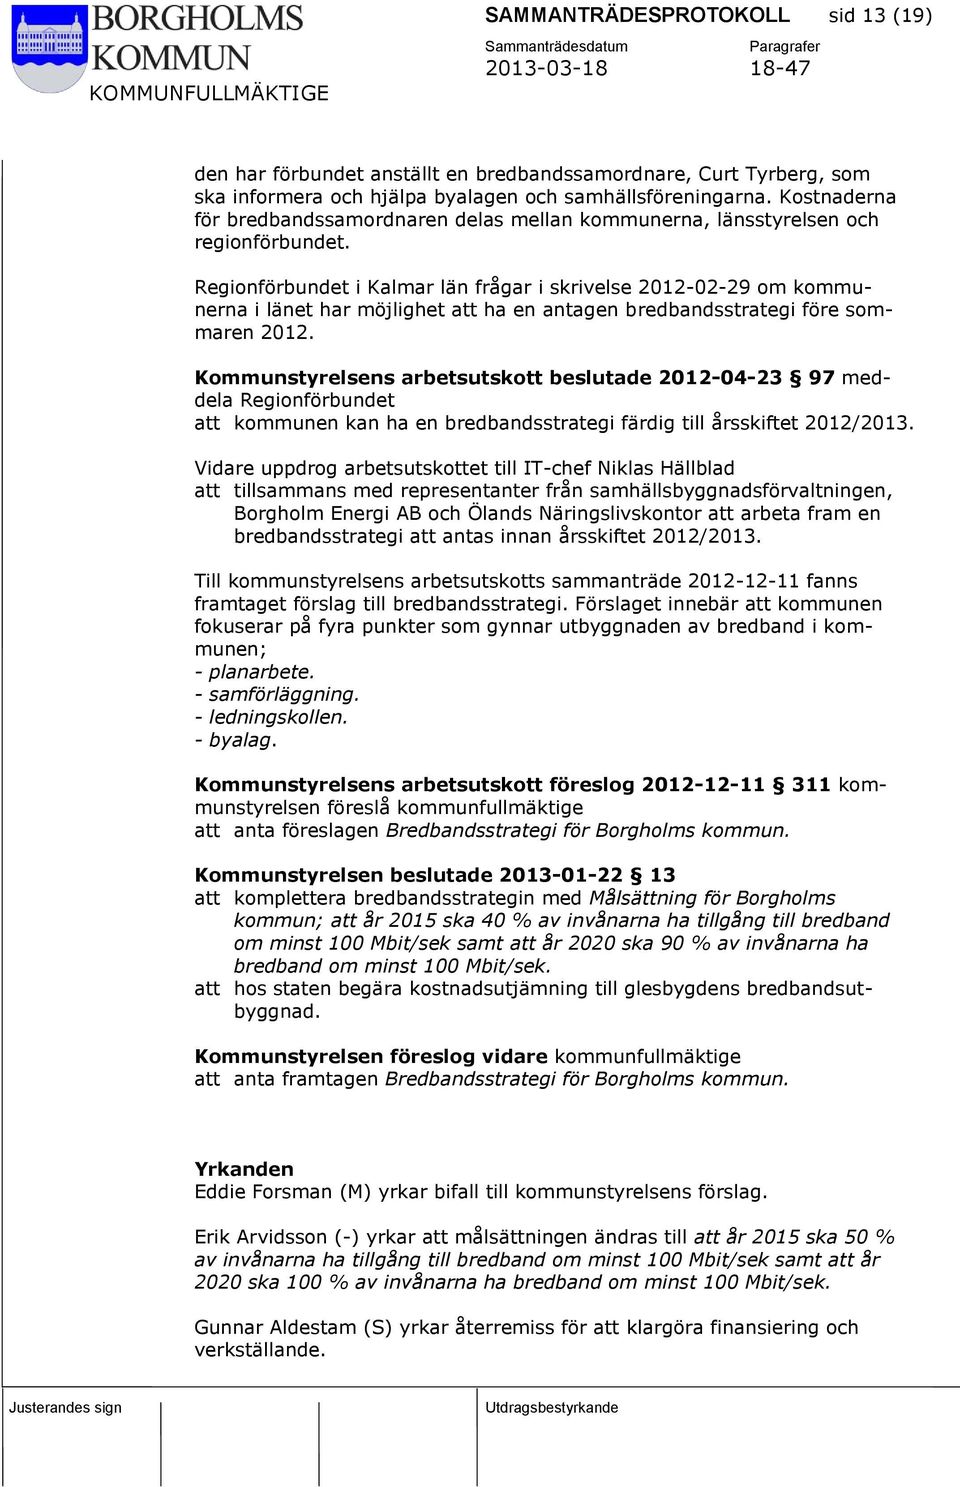 Regionförbundet i Kalmar län frågar i skrivelse 2012-02-29 om kommunerna i länet har möjlighet att ha en antagen bredbandsstrategi före sommaren 2012.